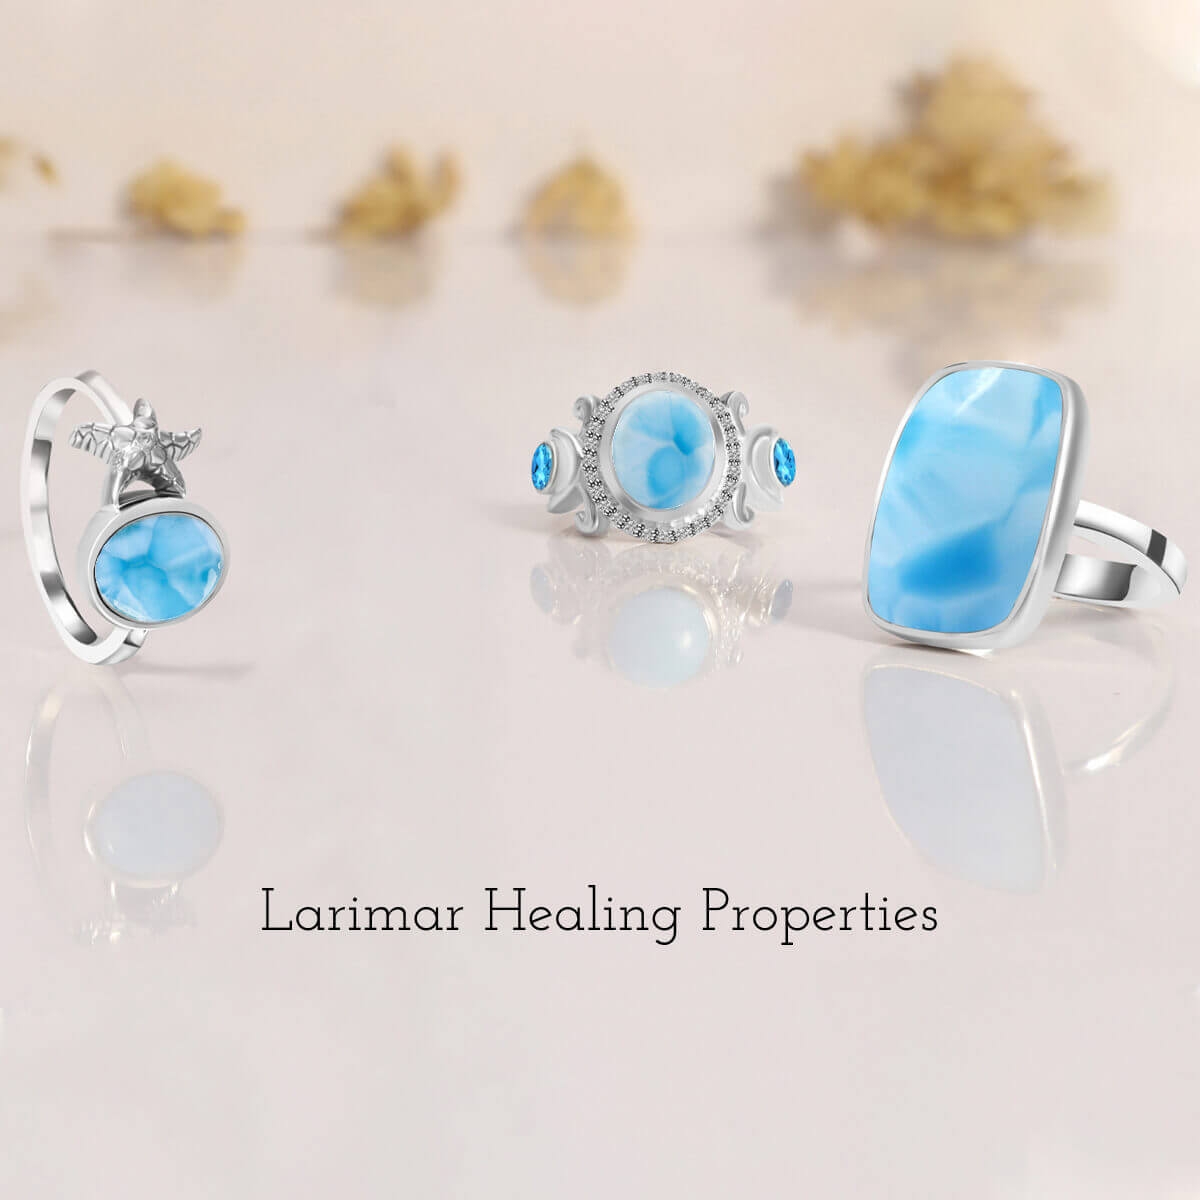 Larimar Healing Properties